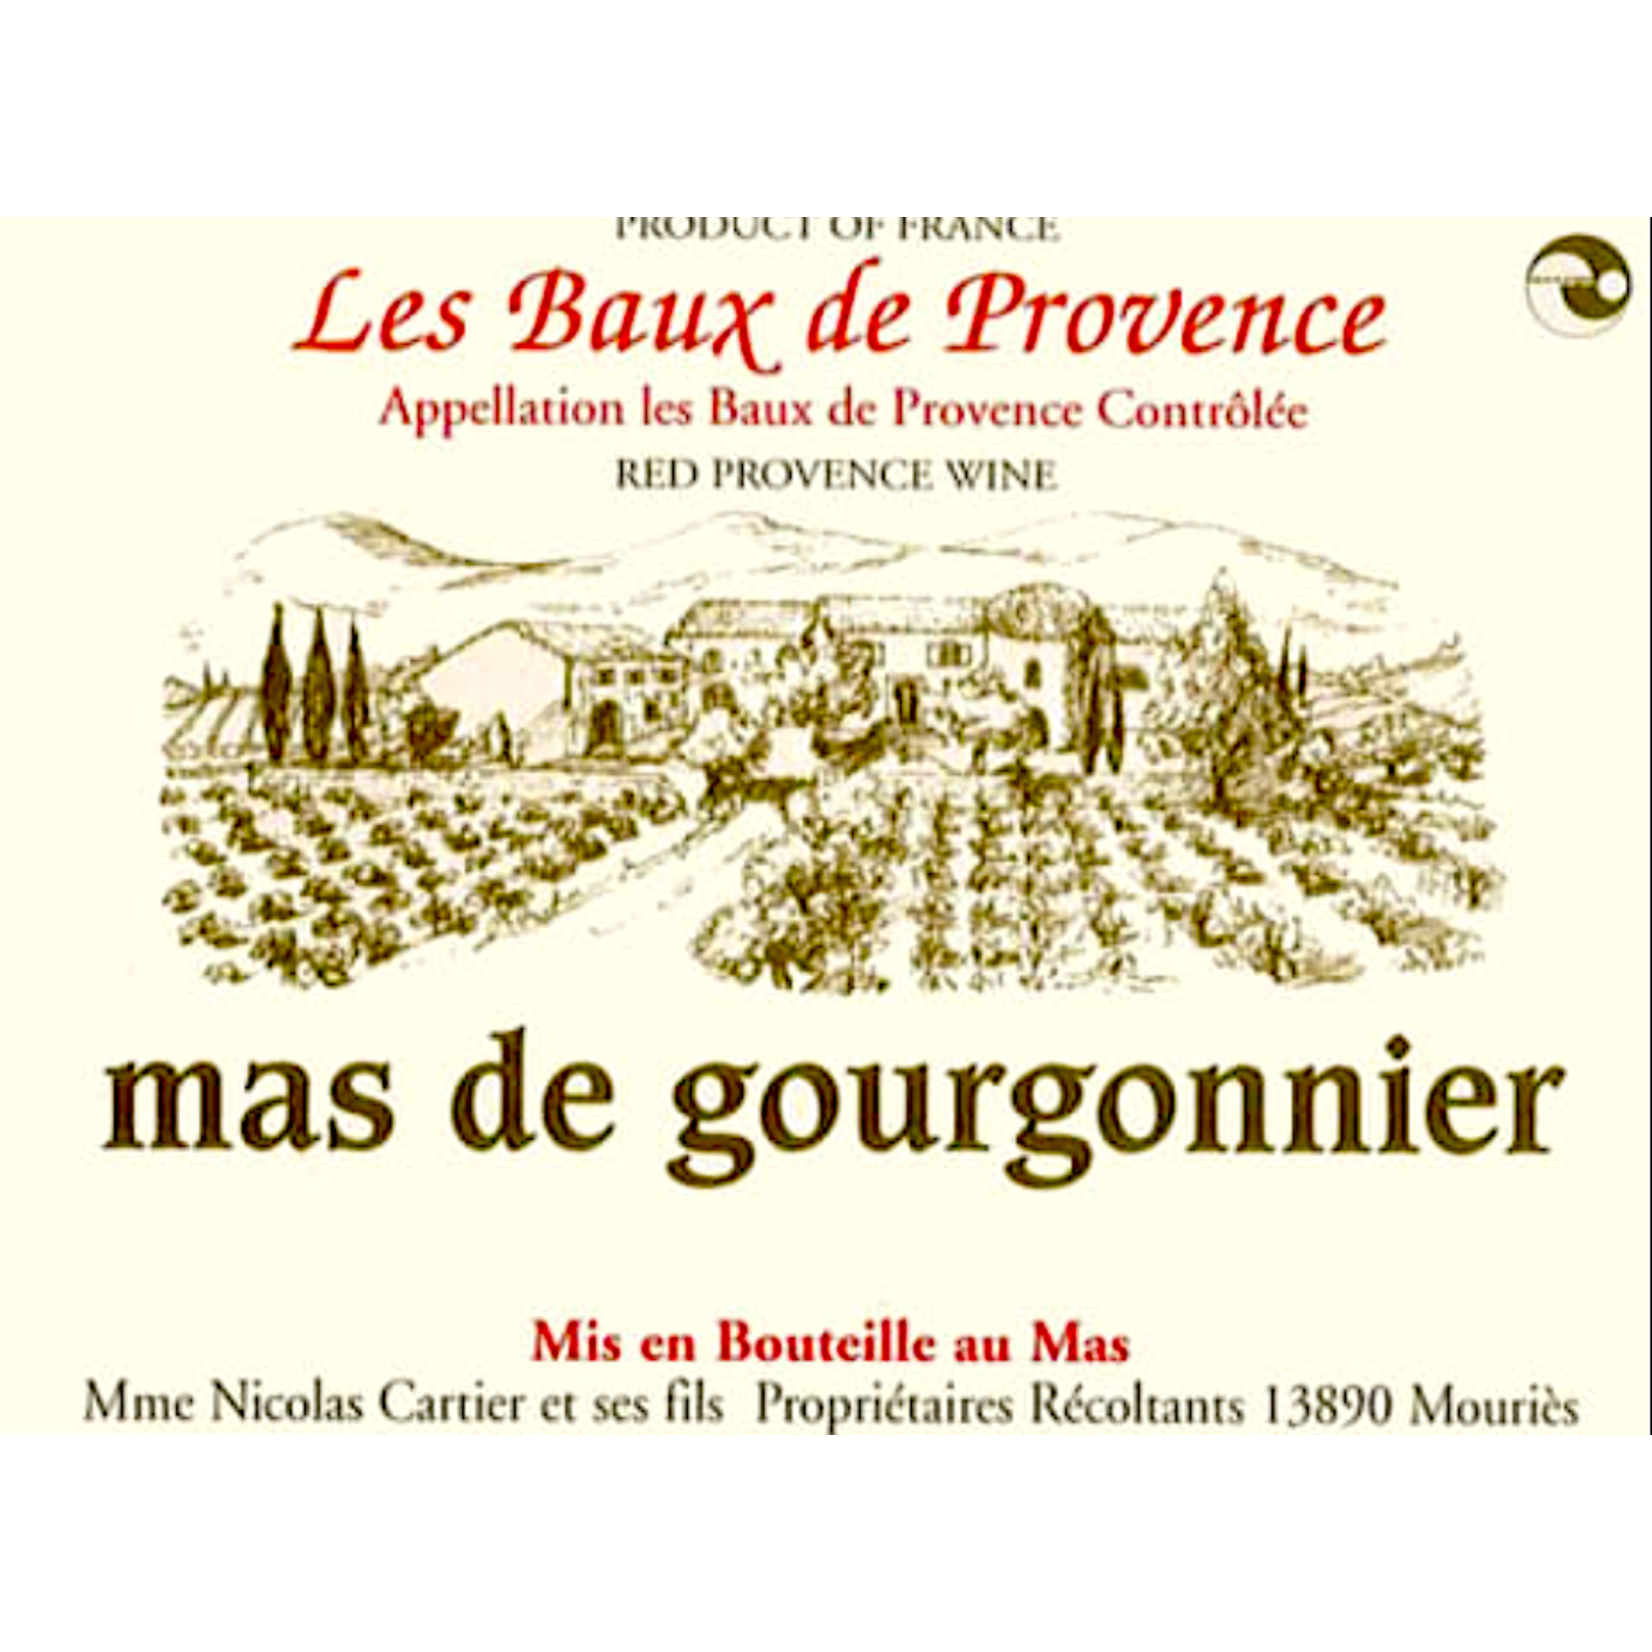 Les Baux de Provence Mas de Gourgonnier Les Baux de Provence Rouge 2019 ORGANIC Provence, France